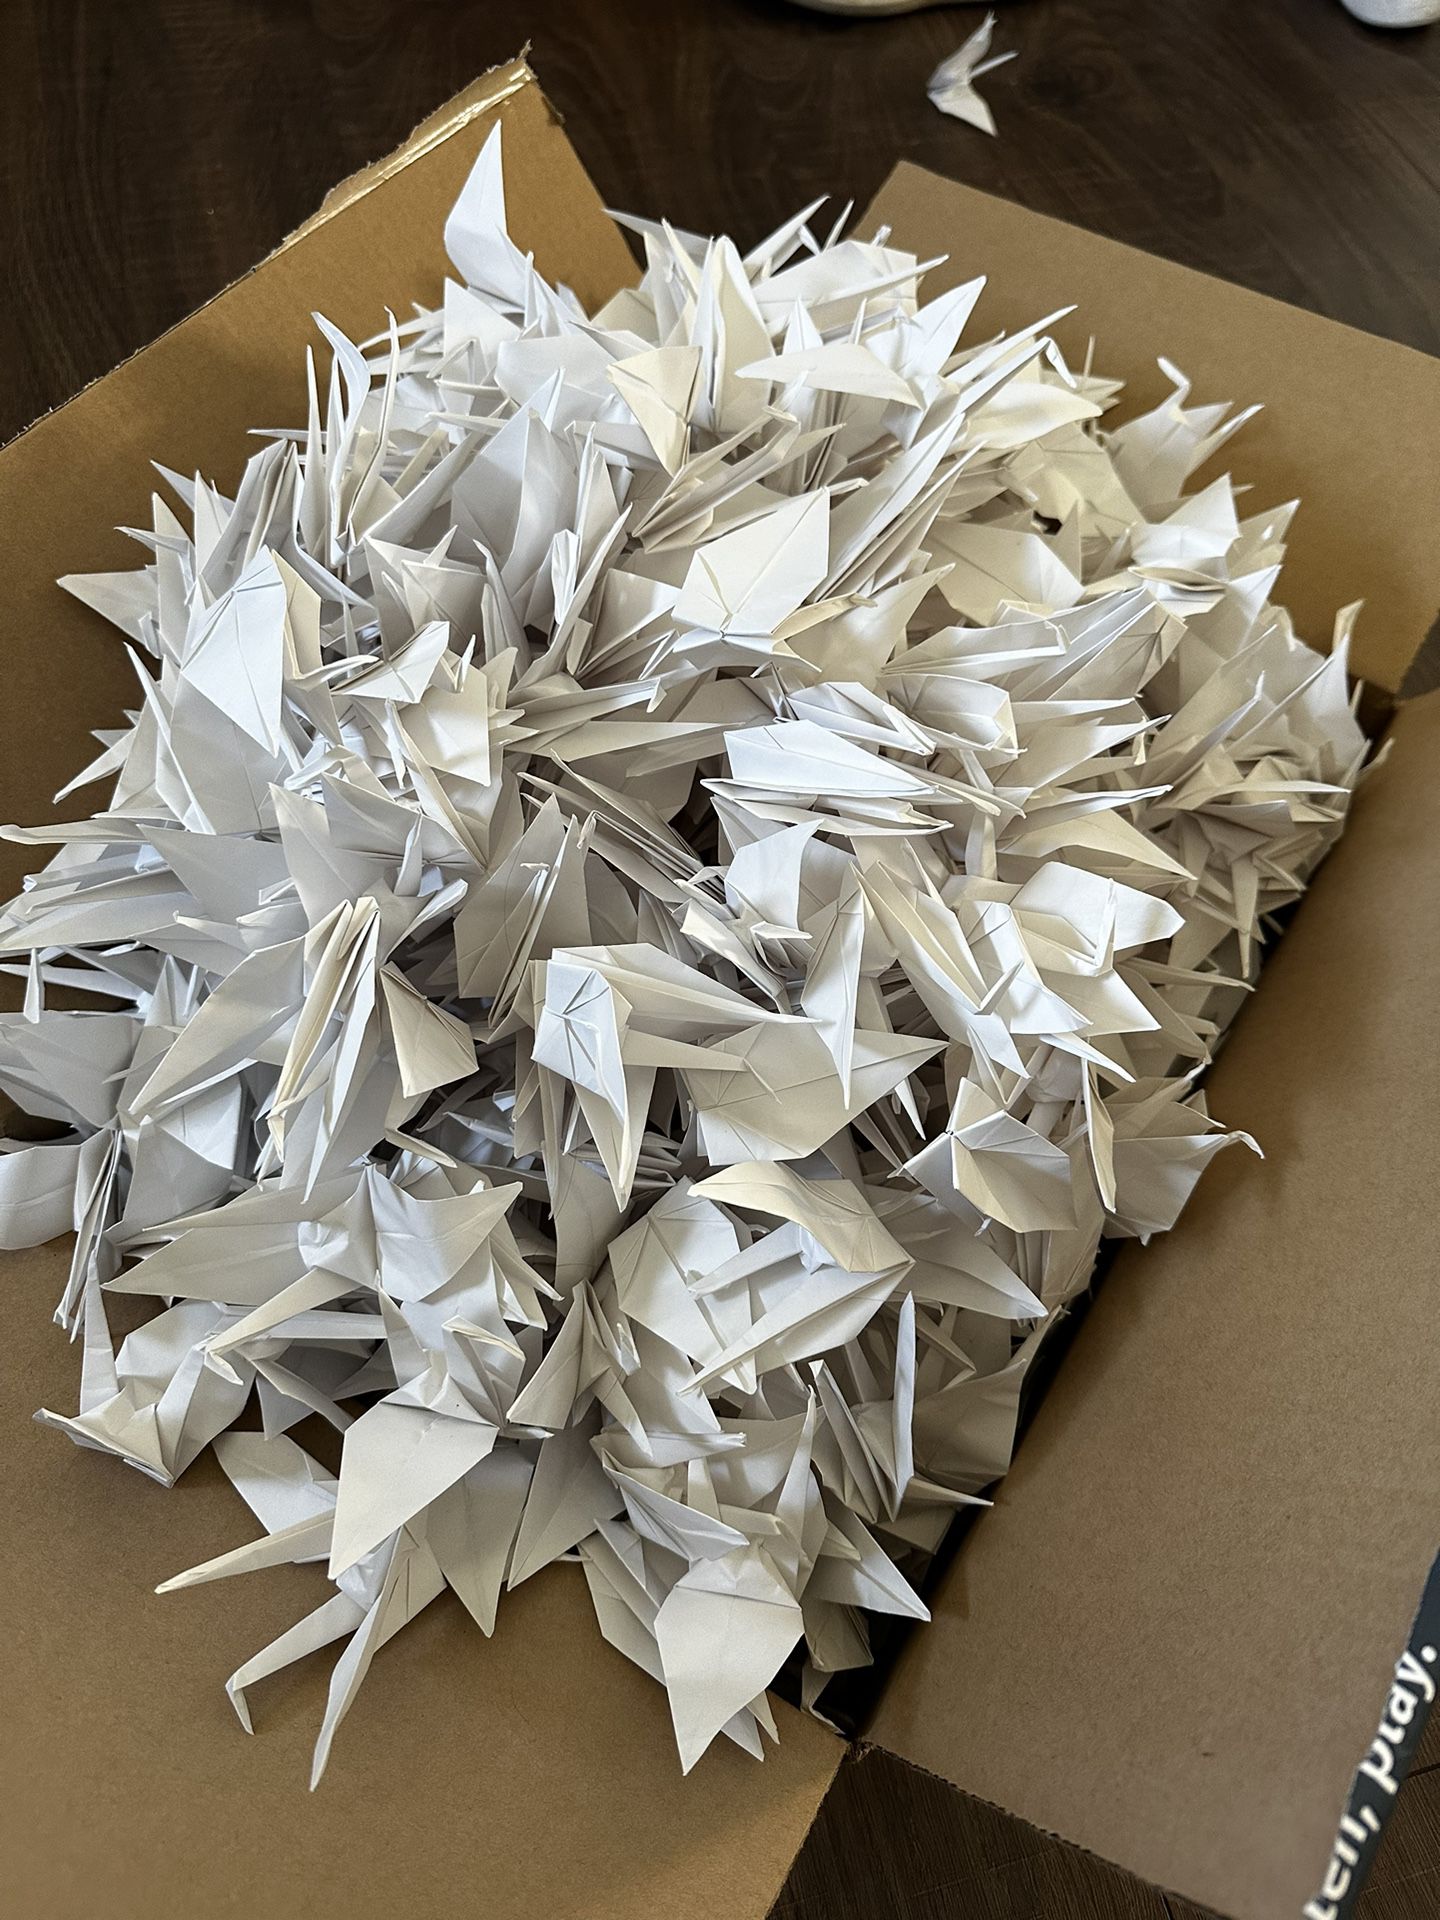 Few Hundred White Paper Cranes